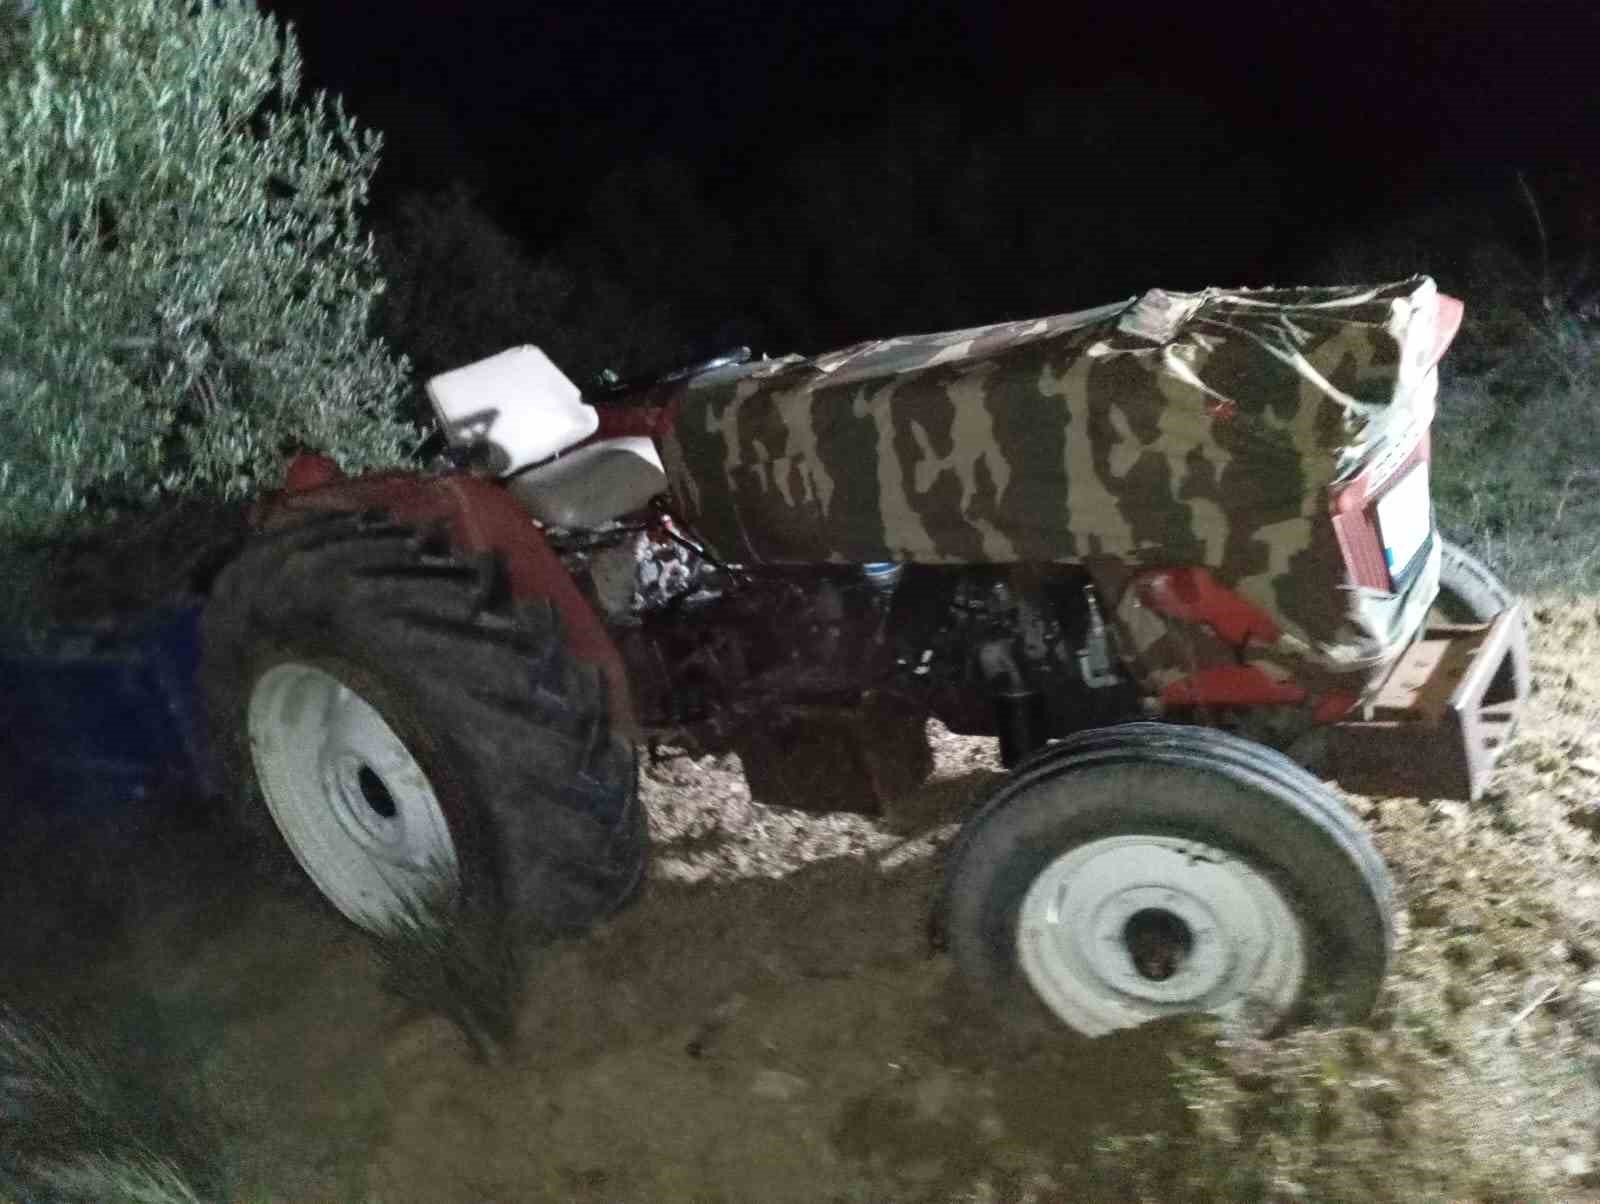 ucuruma yuvarlanan traktorun altinda kalarak hayatini kaybetti 0 ezHu9pyP